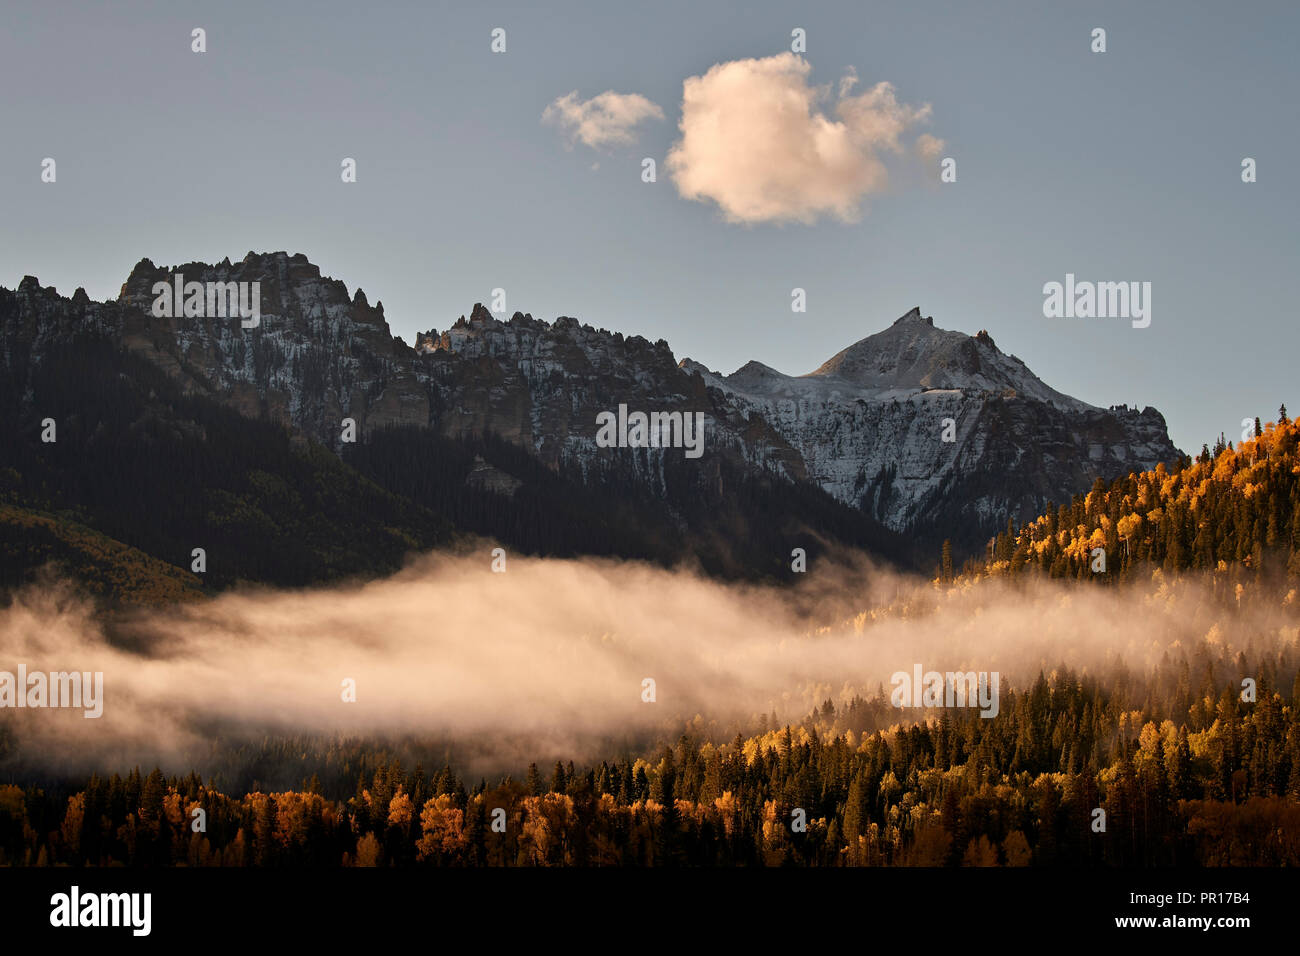 La montagne couverte de neige à l'automne avec le brouillard, Uncompahgre National Forest, Colorado, États-Unis d'Amérique, Amérique du Nord Banque D'Images